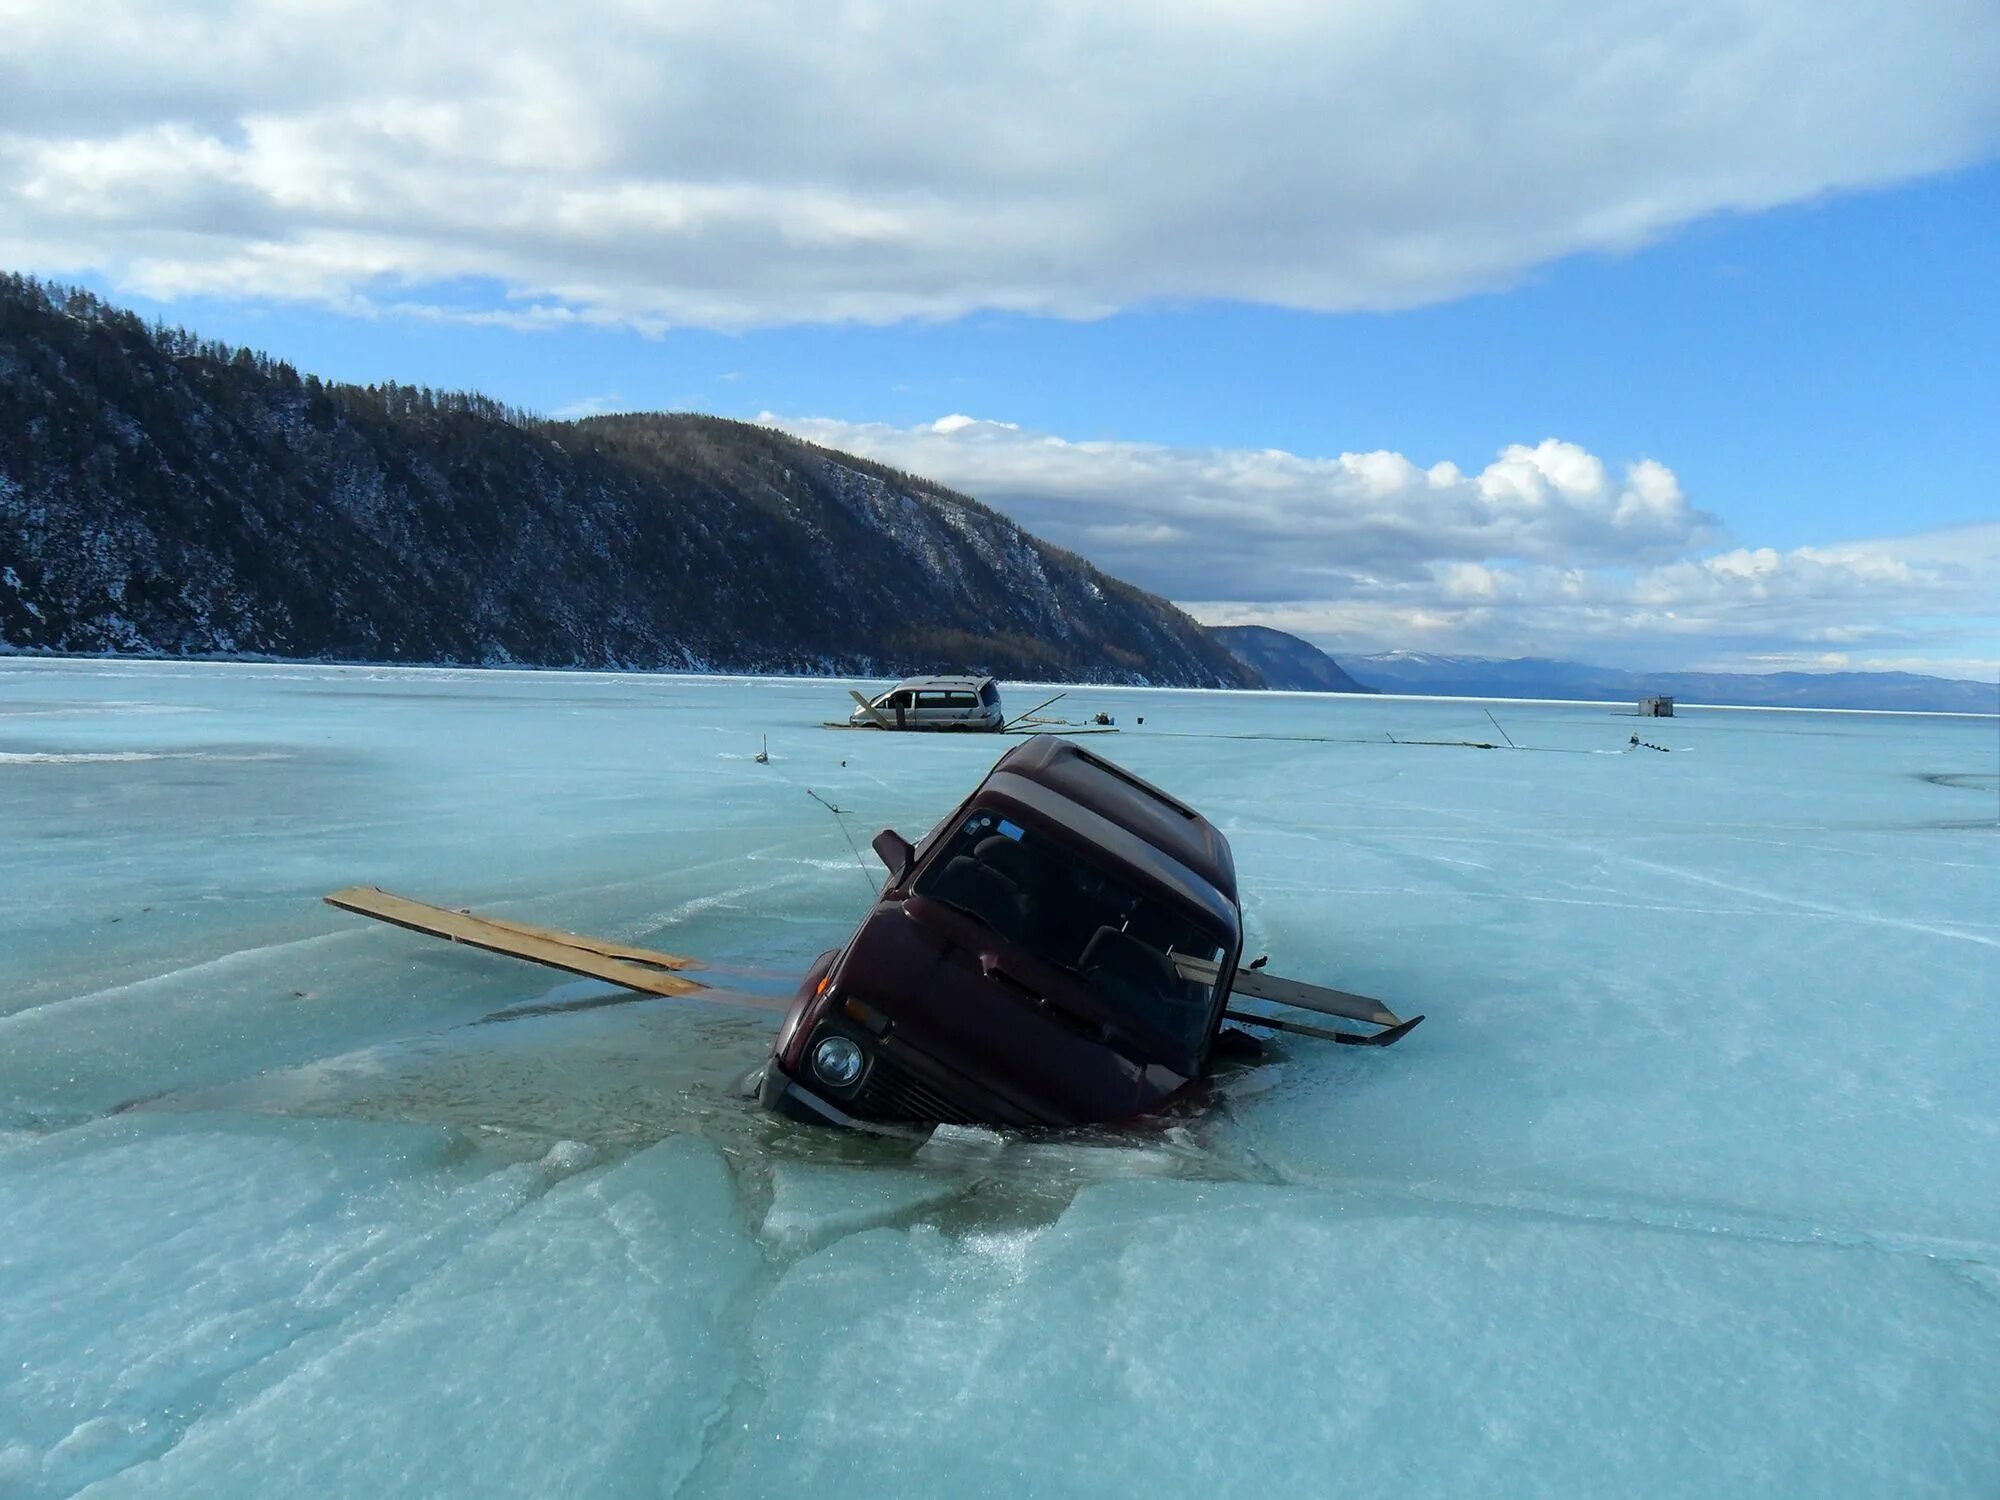 Можно на машине на лед. Байкал авто. Машина на озере Байкал. Машина на льду Байкала. Машины тонут на Байкале.